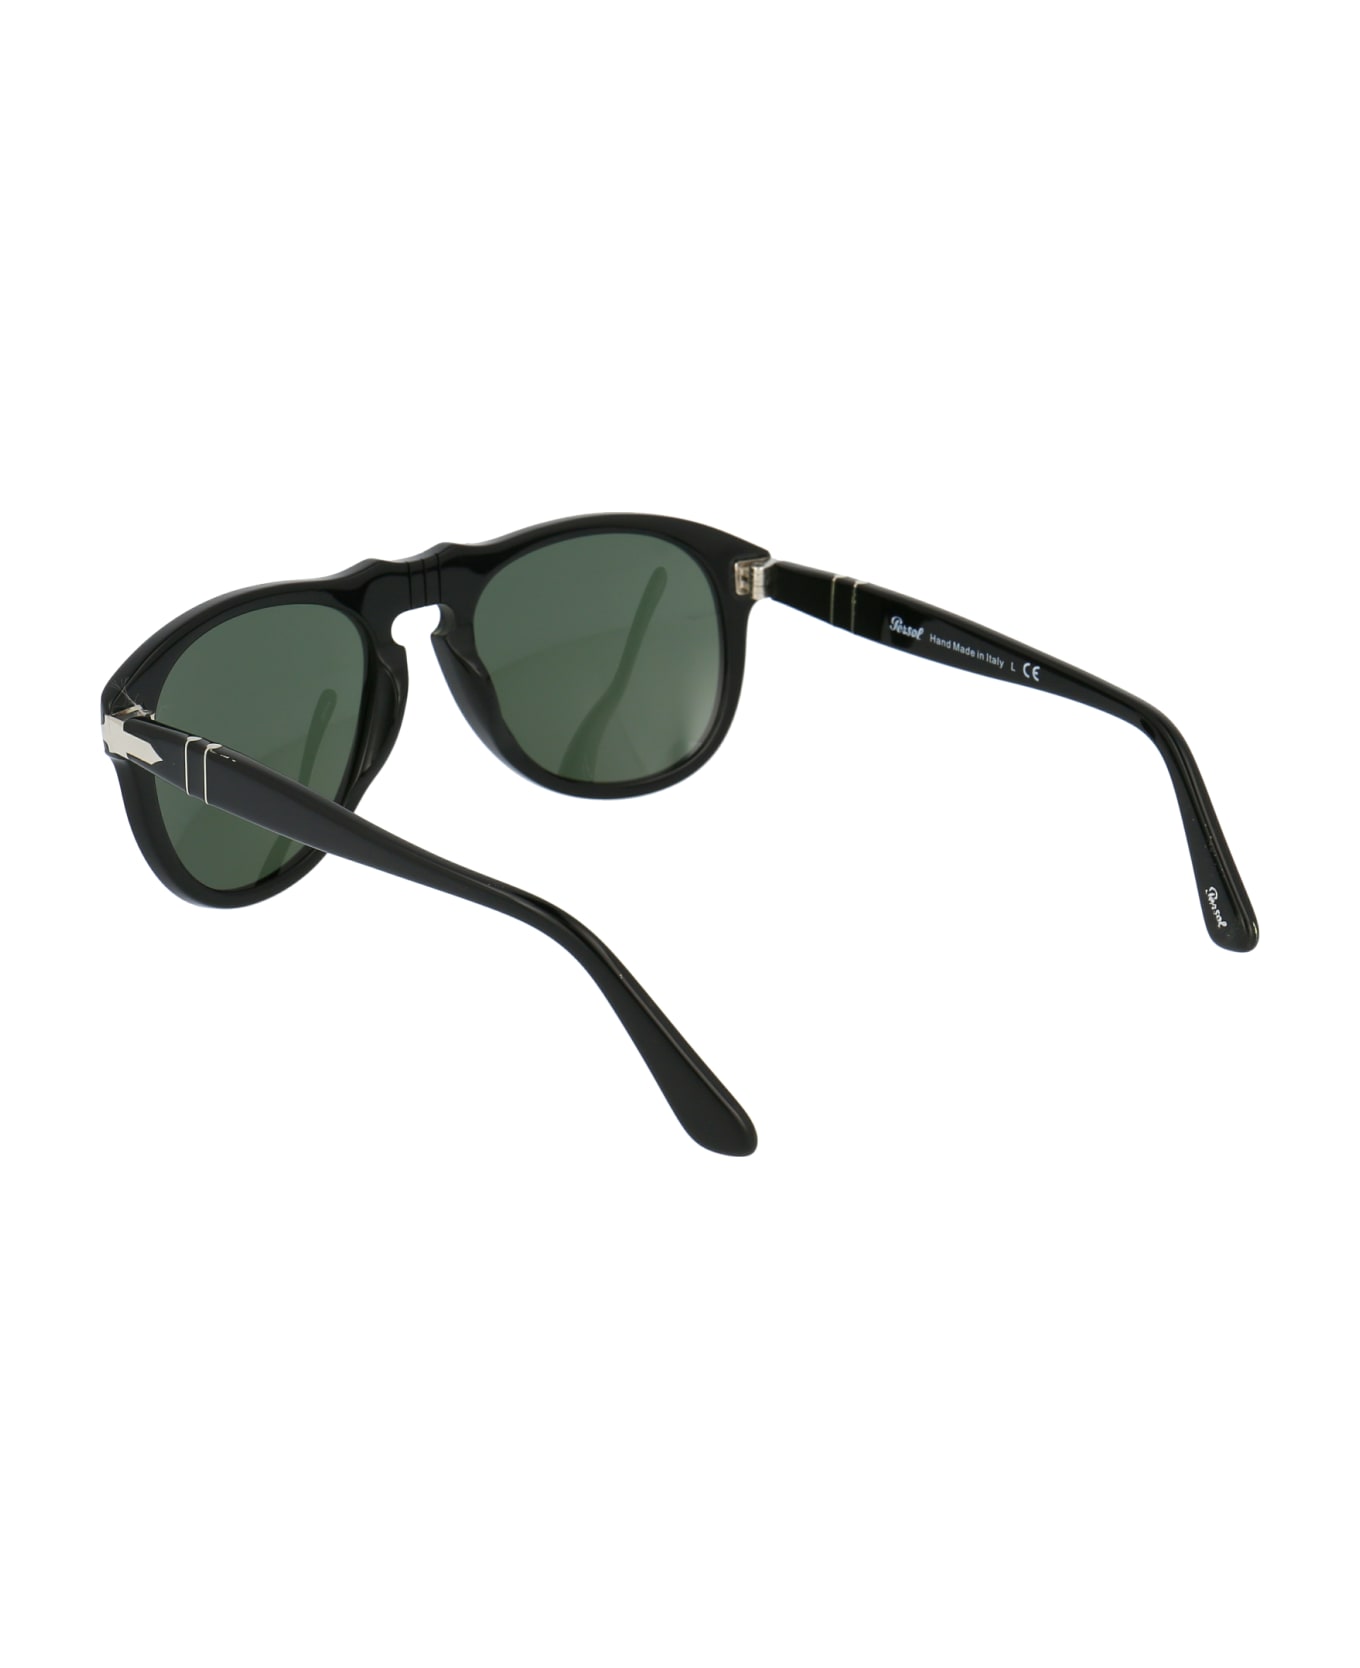 Persol 0po0649 Sunglasses - 95/31 BLACK